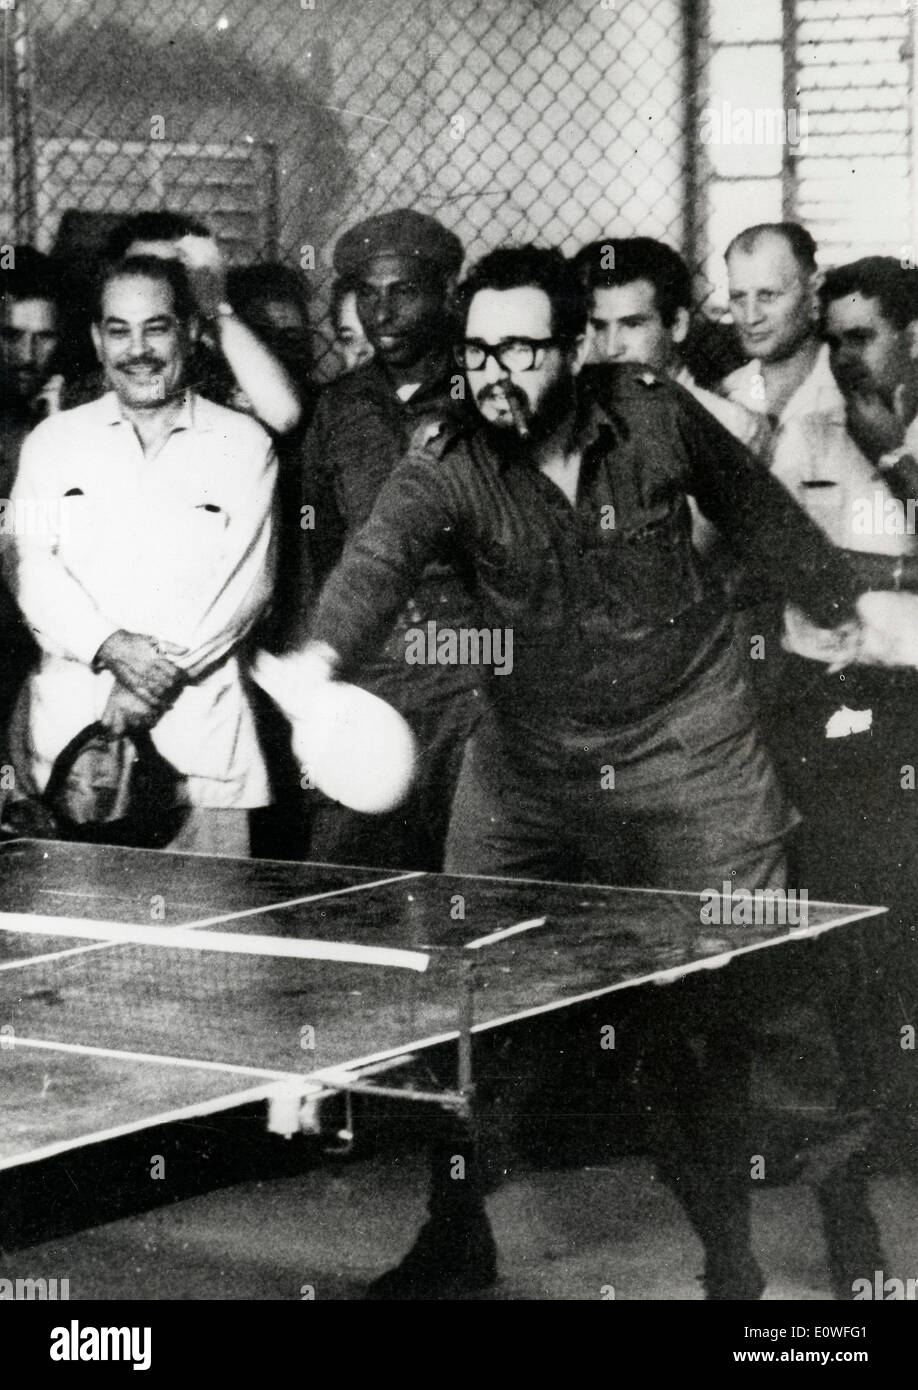 Fidel Castro révolutionnaire cubain jouer au ping-pong Banque D'Images